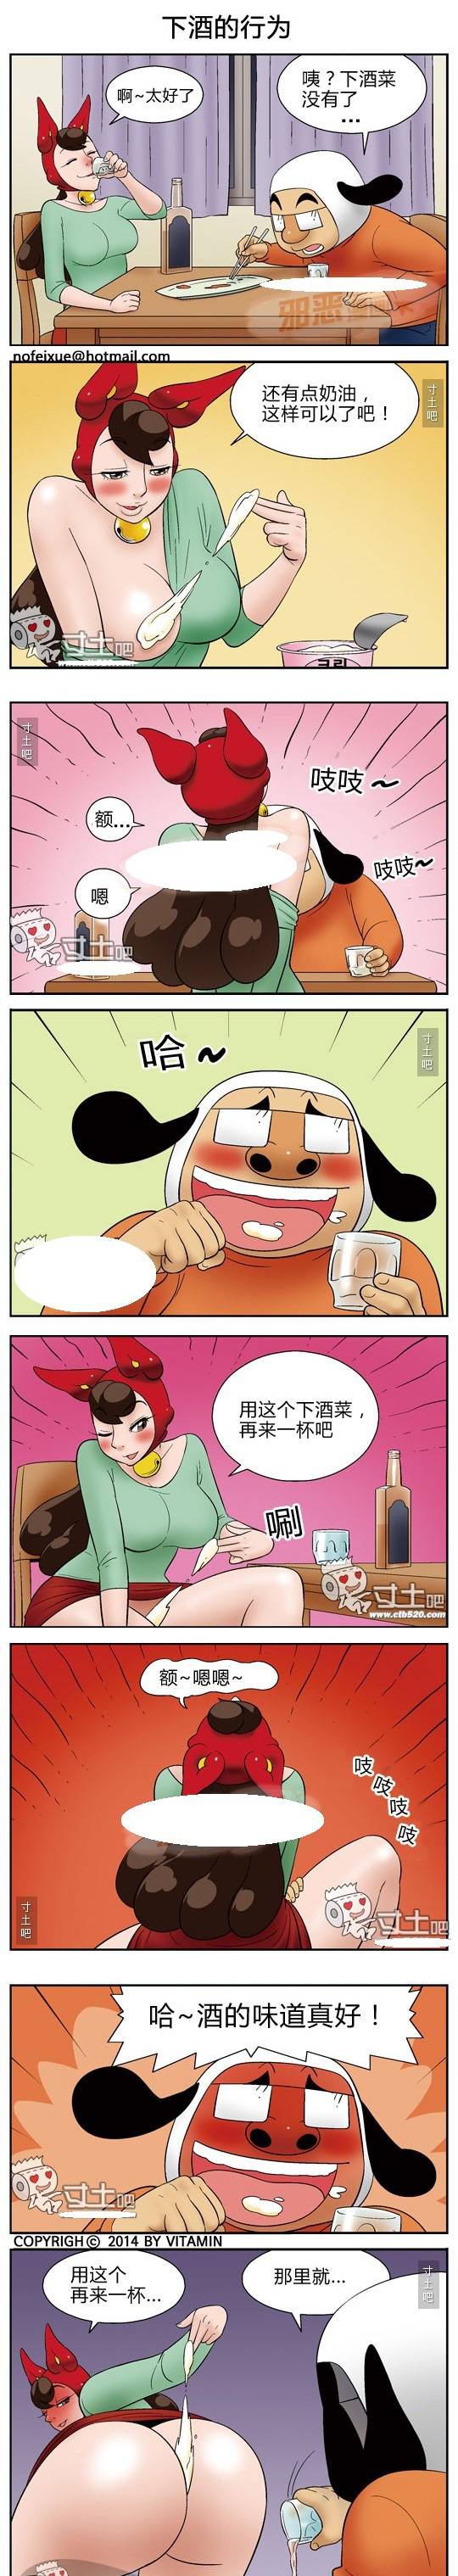 日本邪恶漫画全集禁 下酒的行为